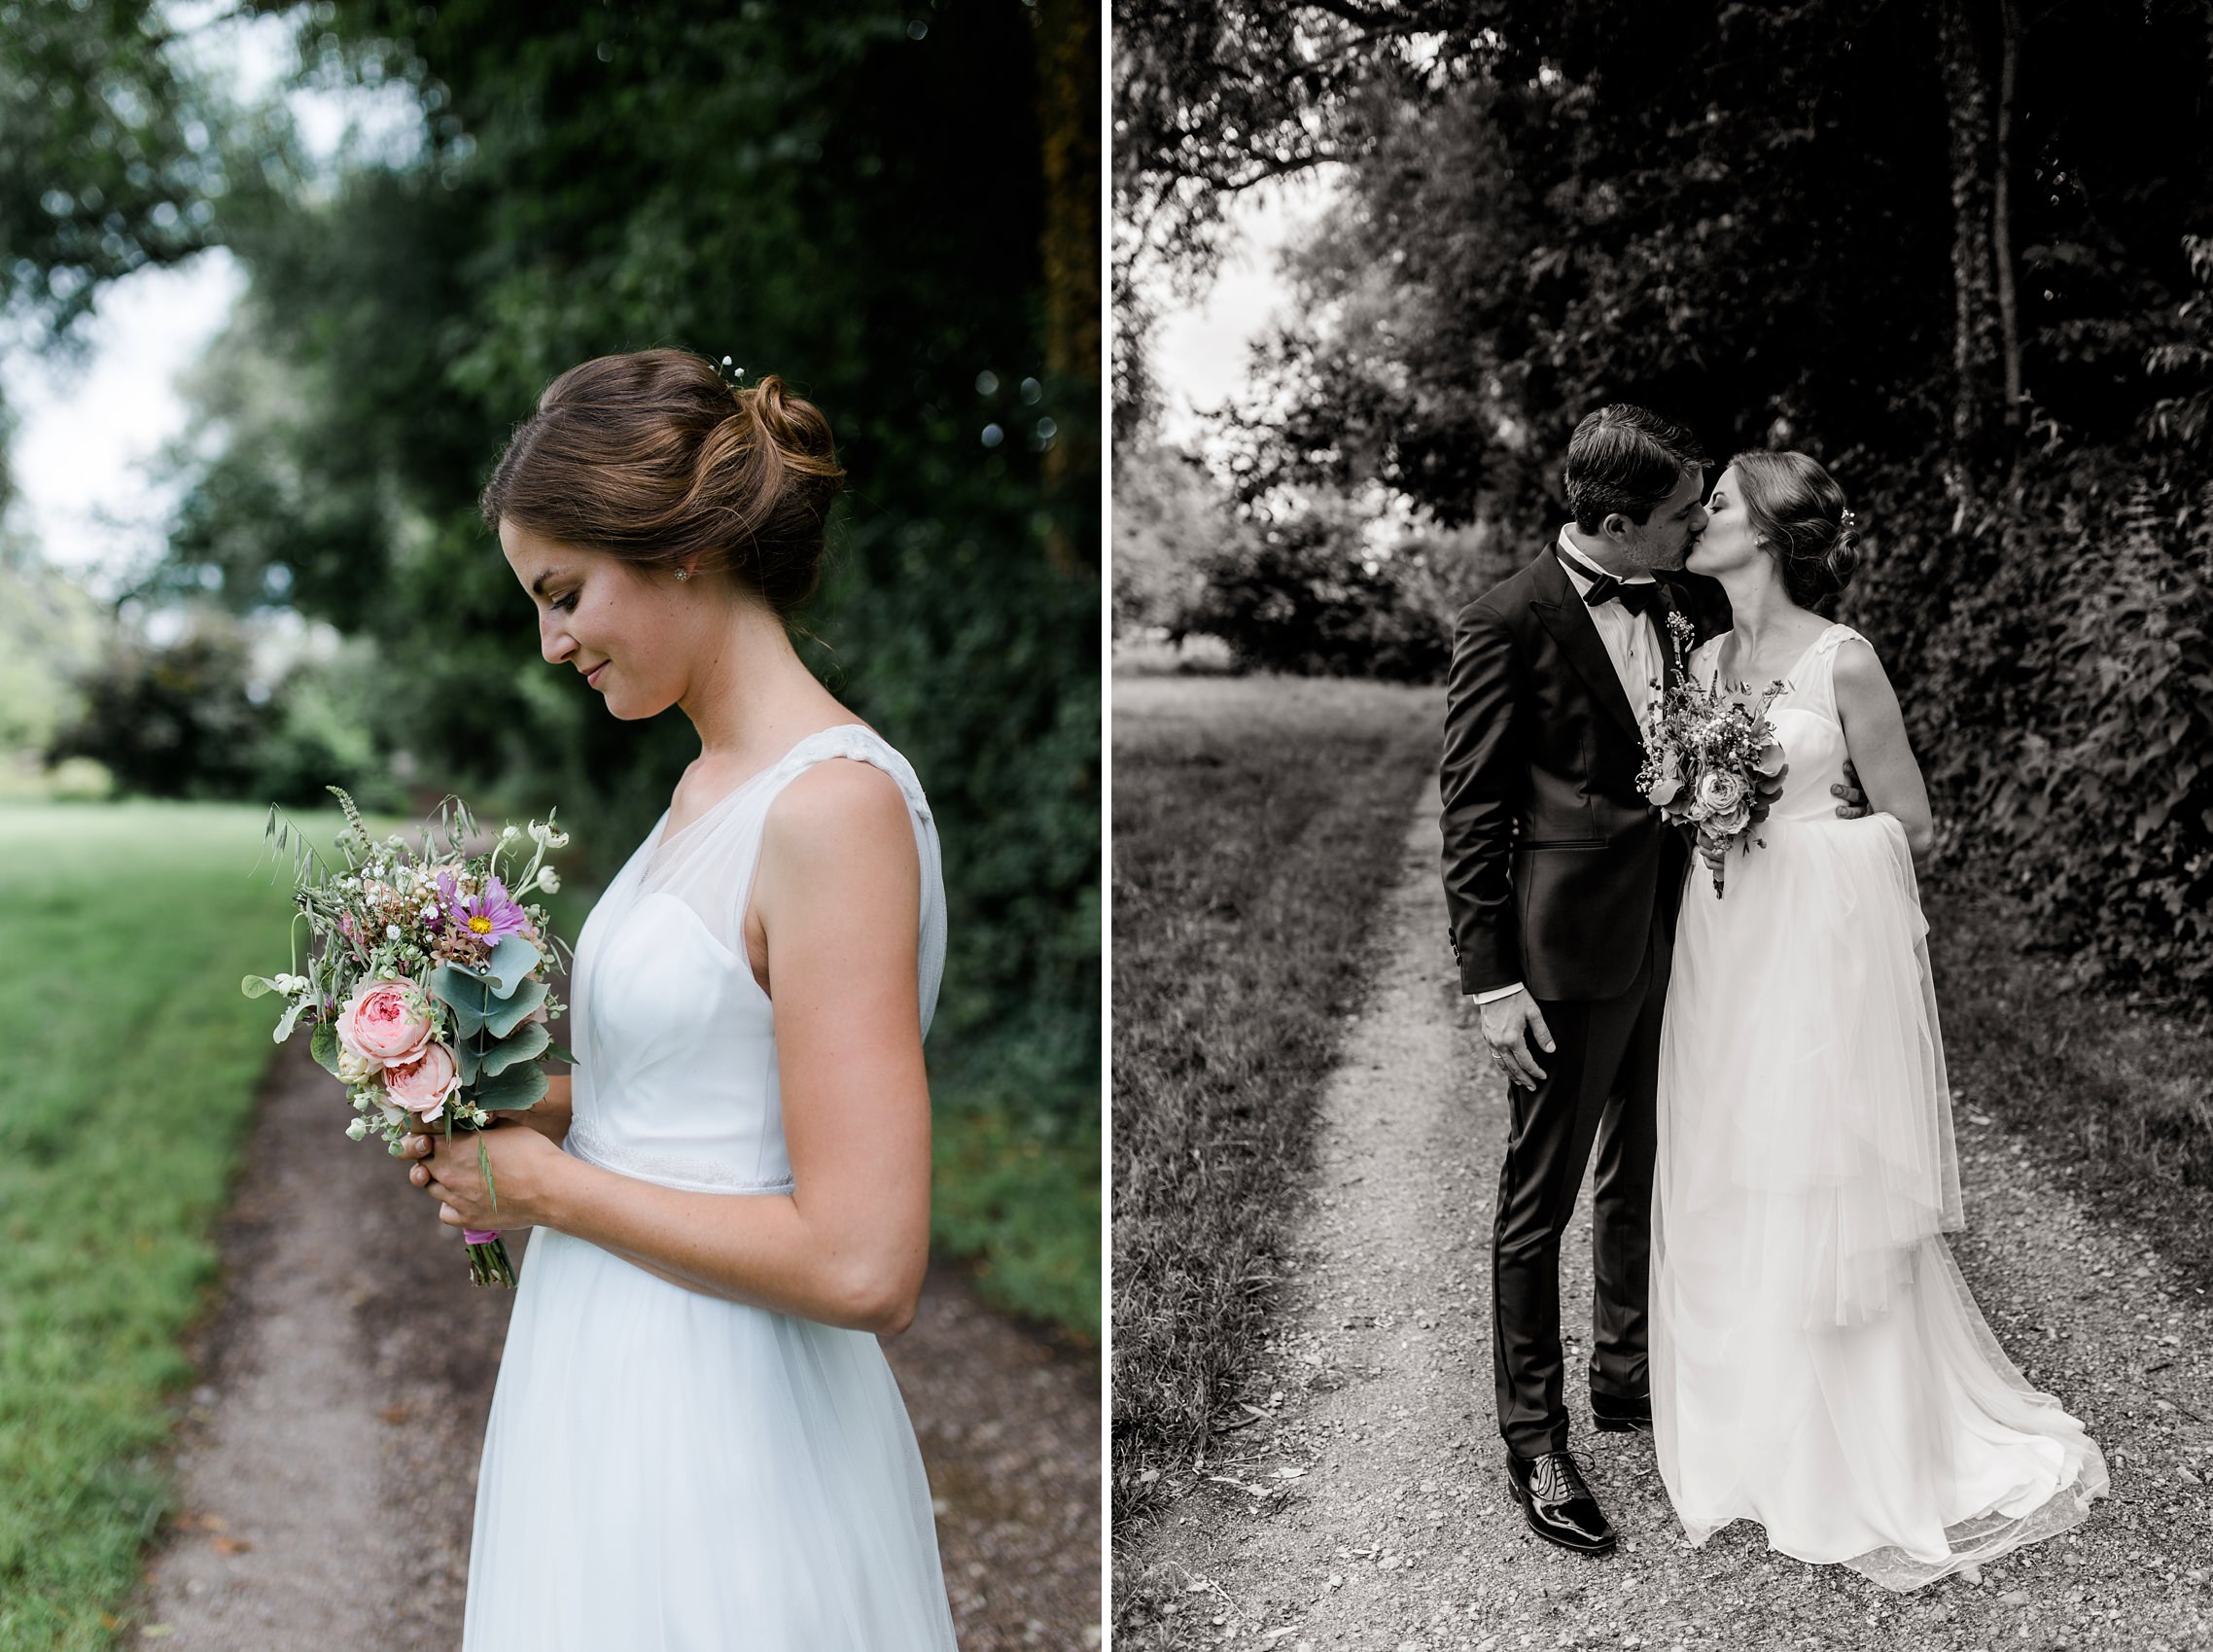 Bildpaar: Braut mit Brautstrauss und küssendes Hochzeitspaar in schwarzweiss